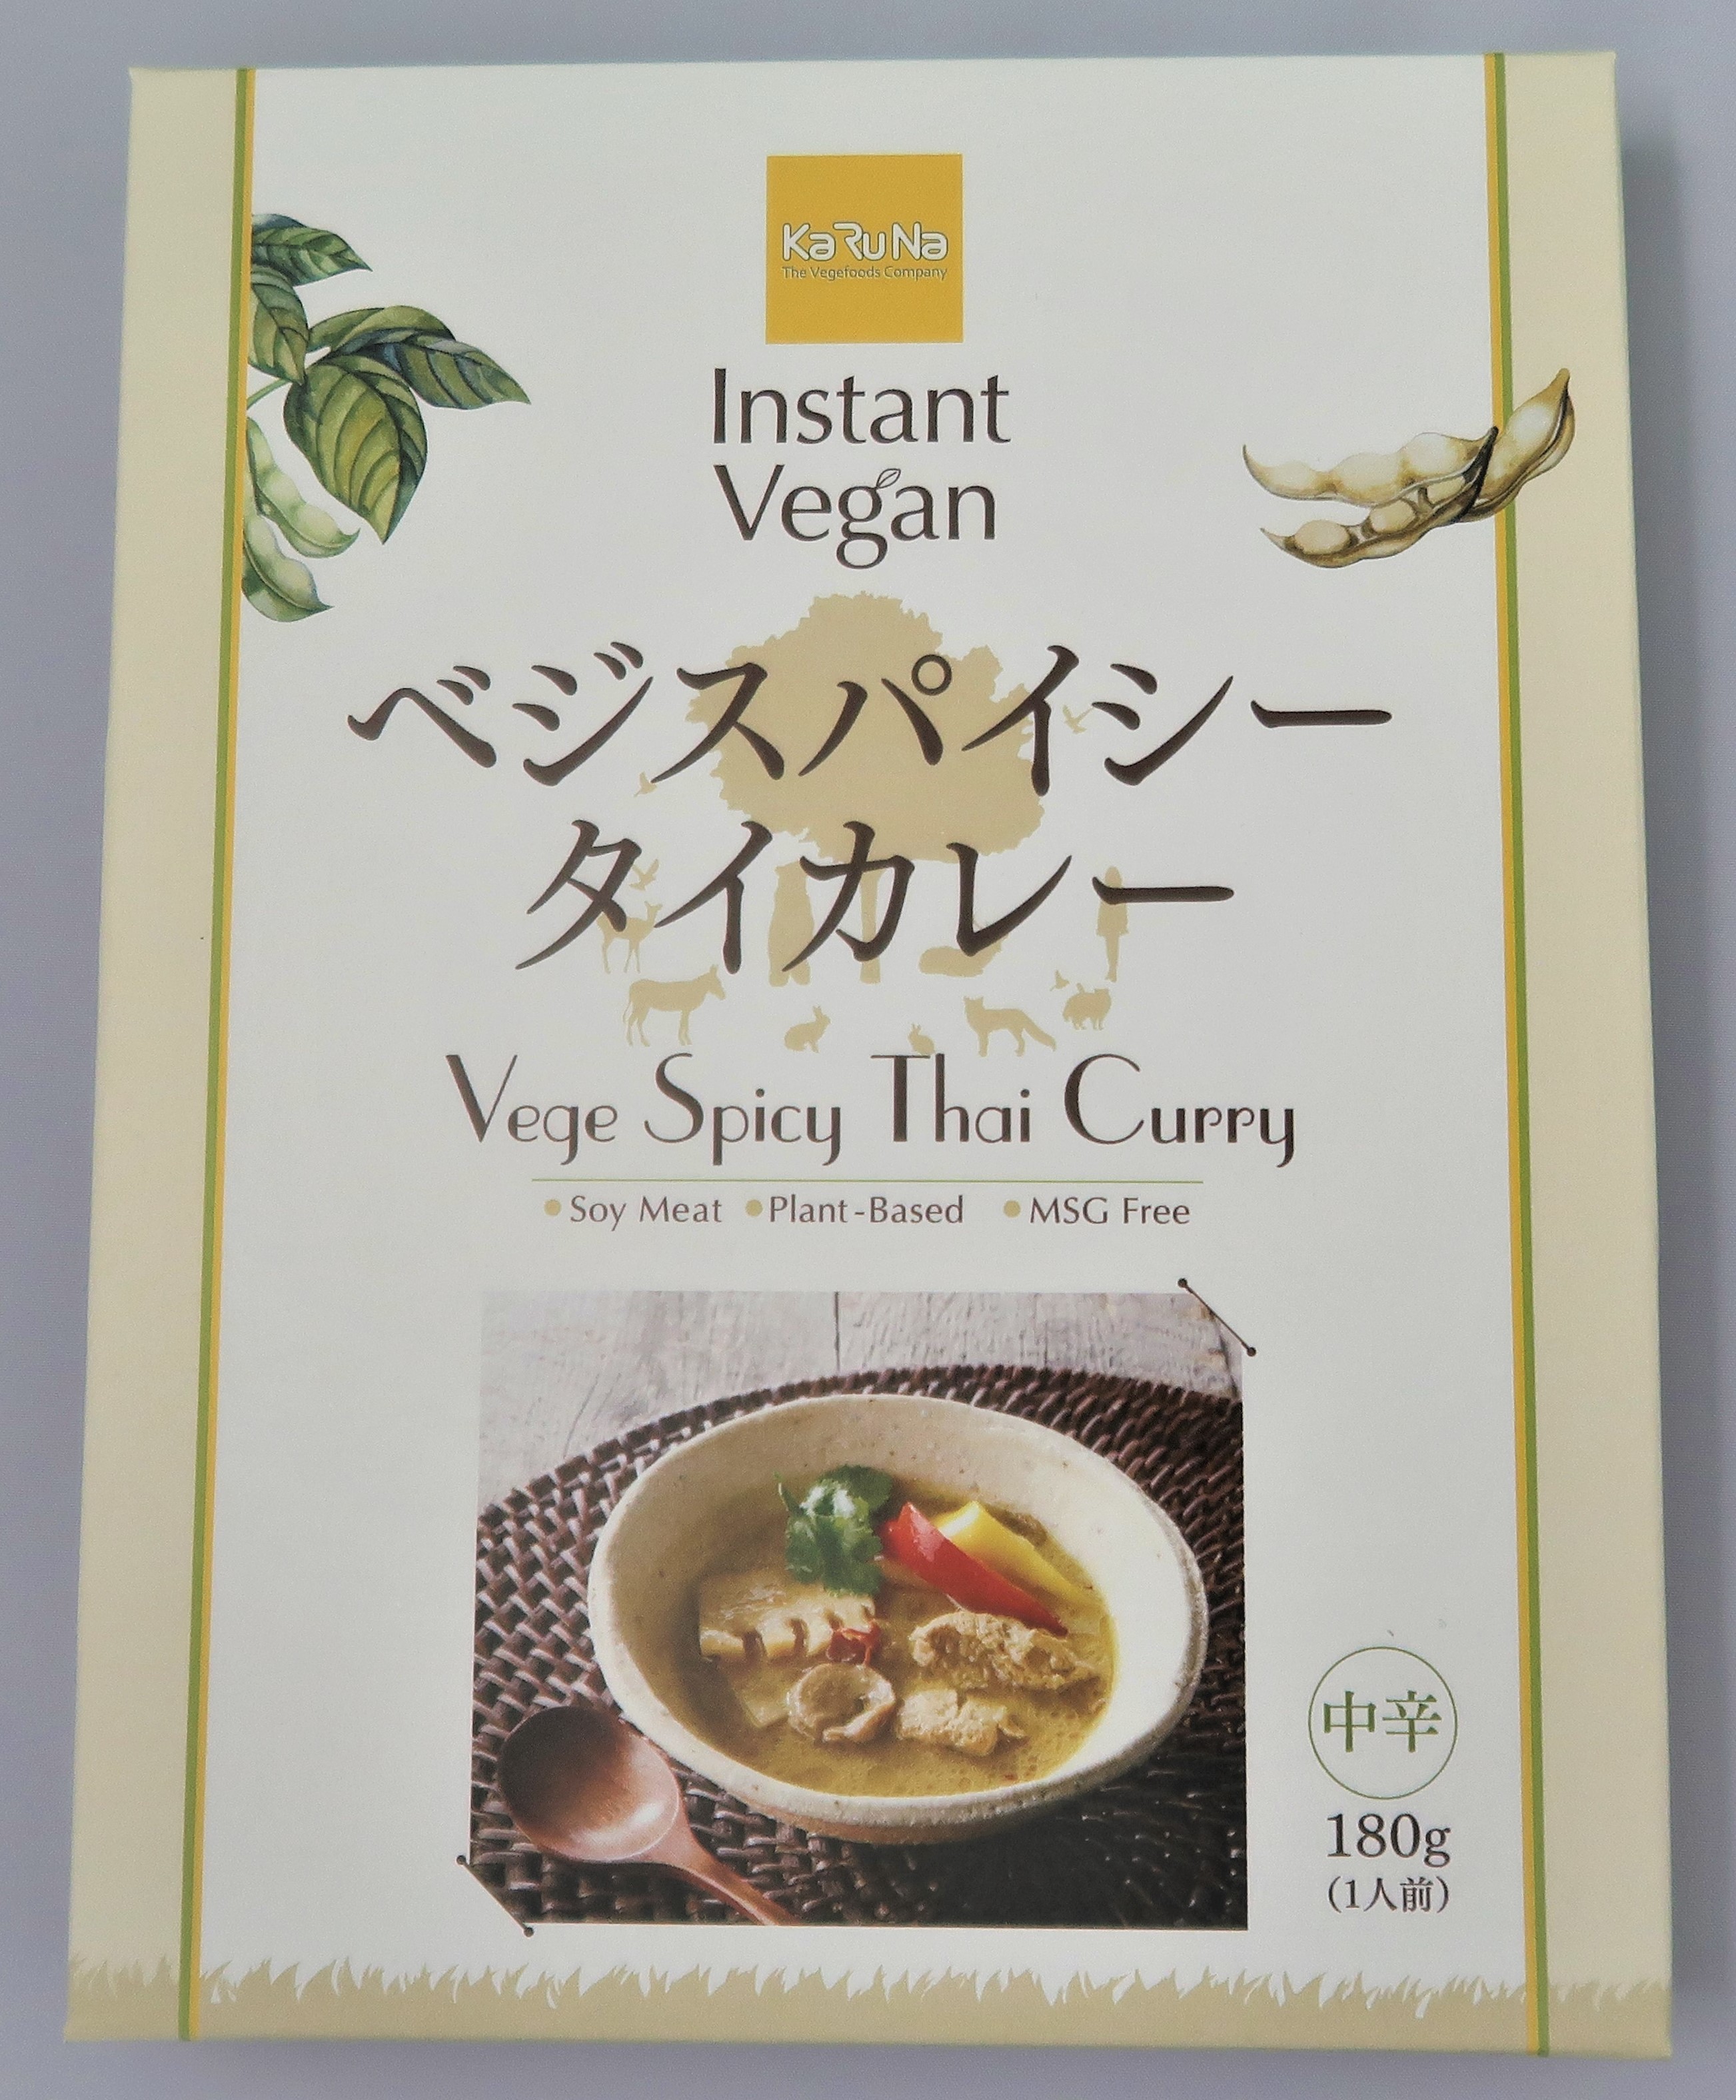 インスタントヴィーガンベジスパイシータイカレー(Instant Vegan Vege Spicy Thai Curry)